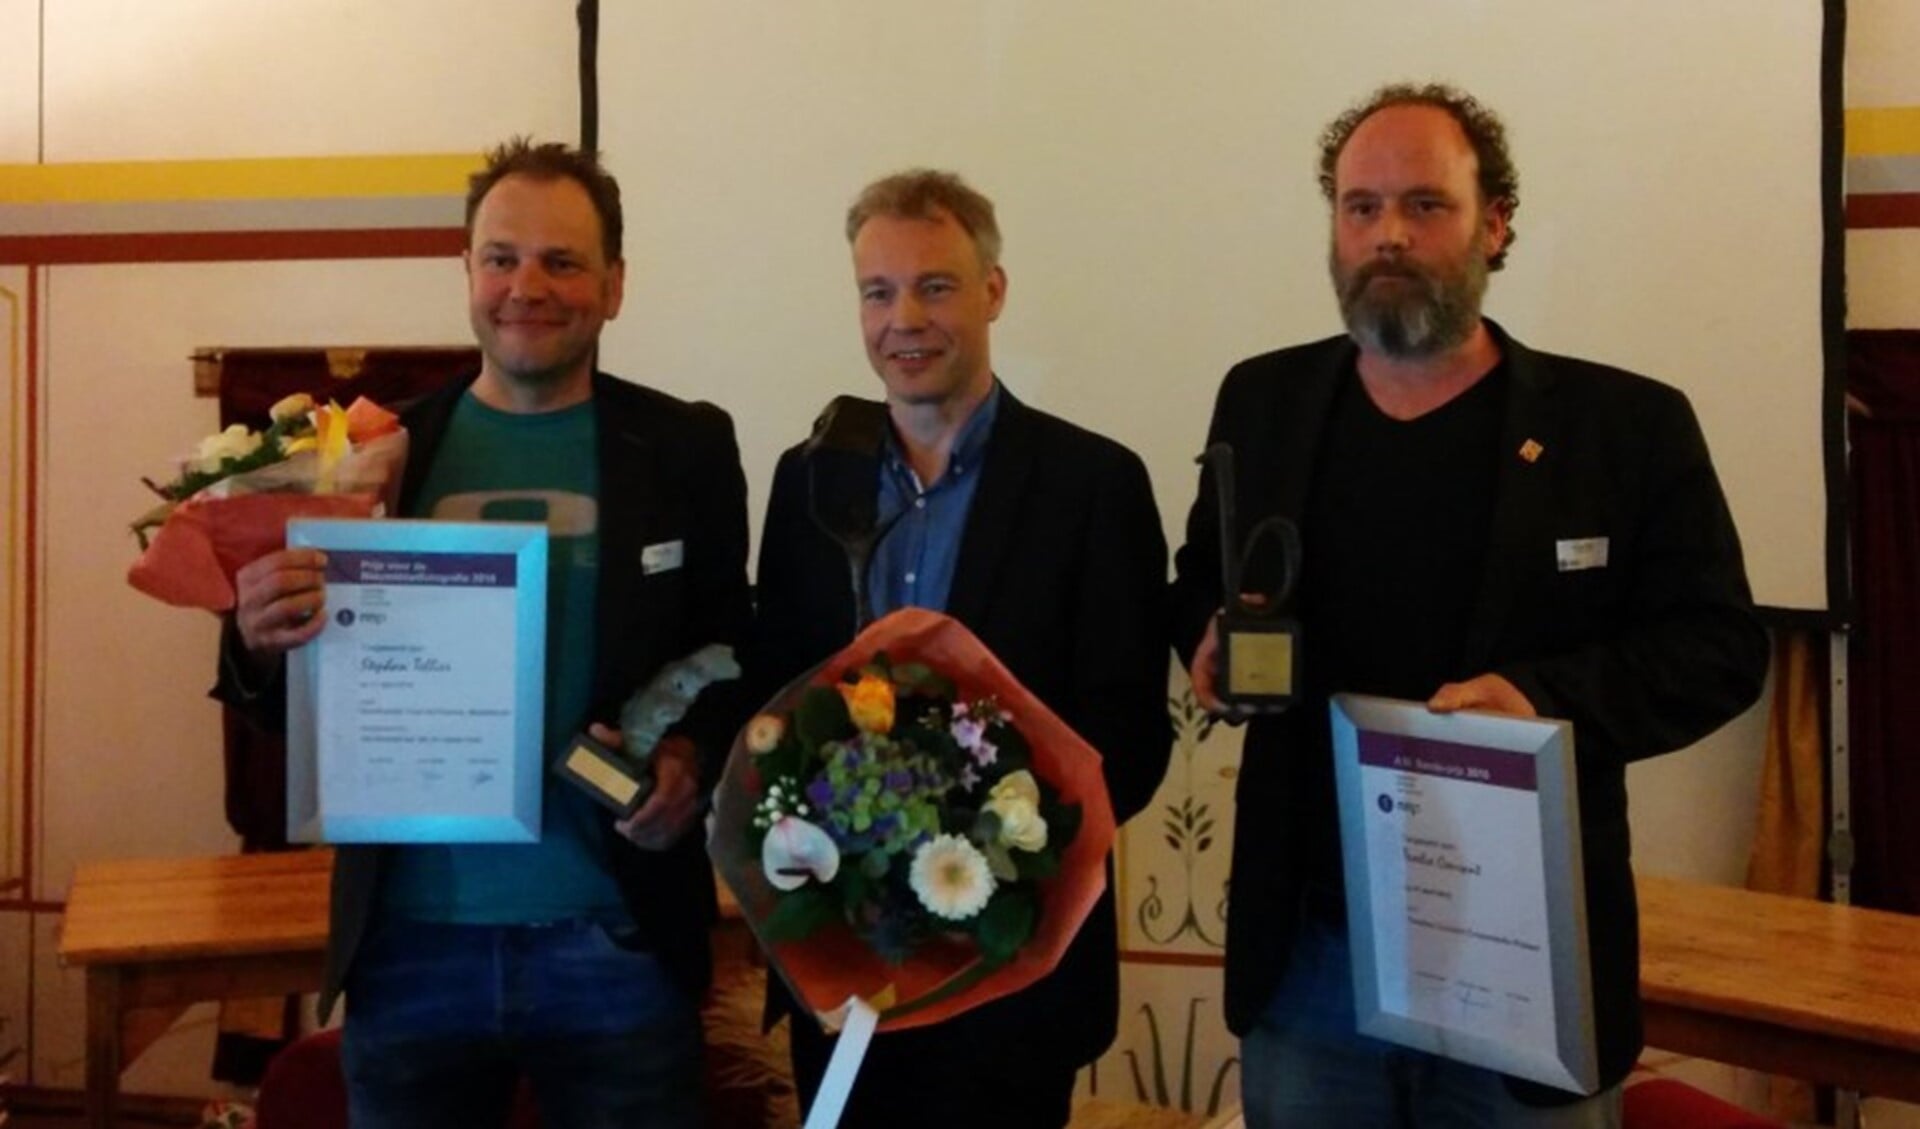 Rechts Duncan Whyte, samen met de winnaars van de Prijs voor de Nieuwsbladfotografie en de Nieuwsbladjournalistiek.